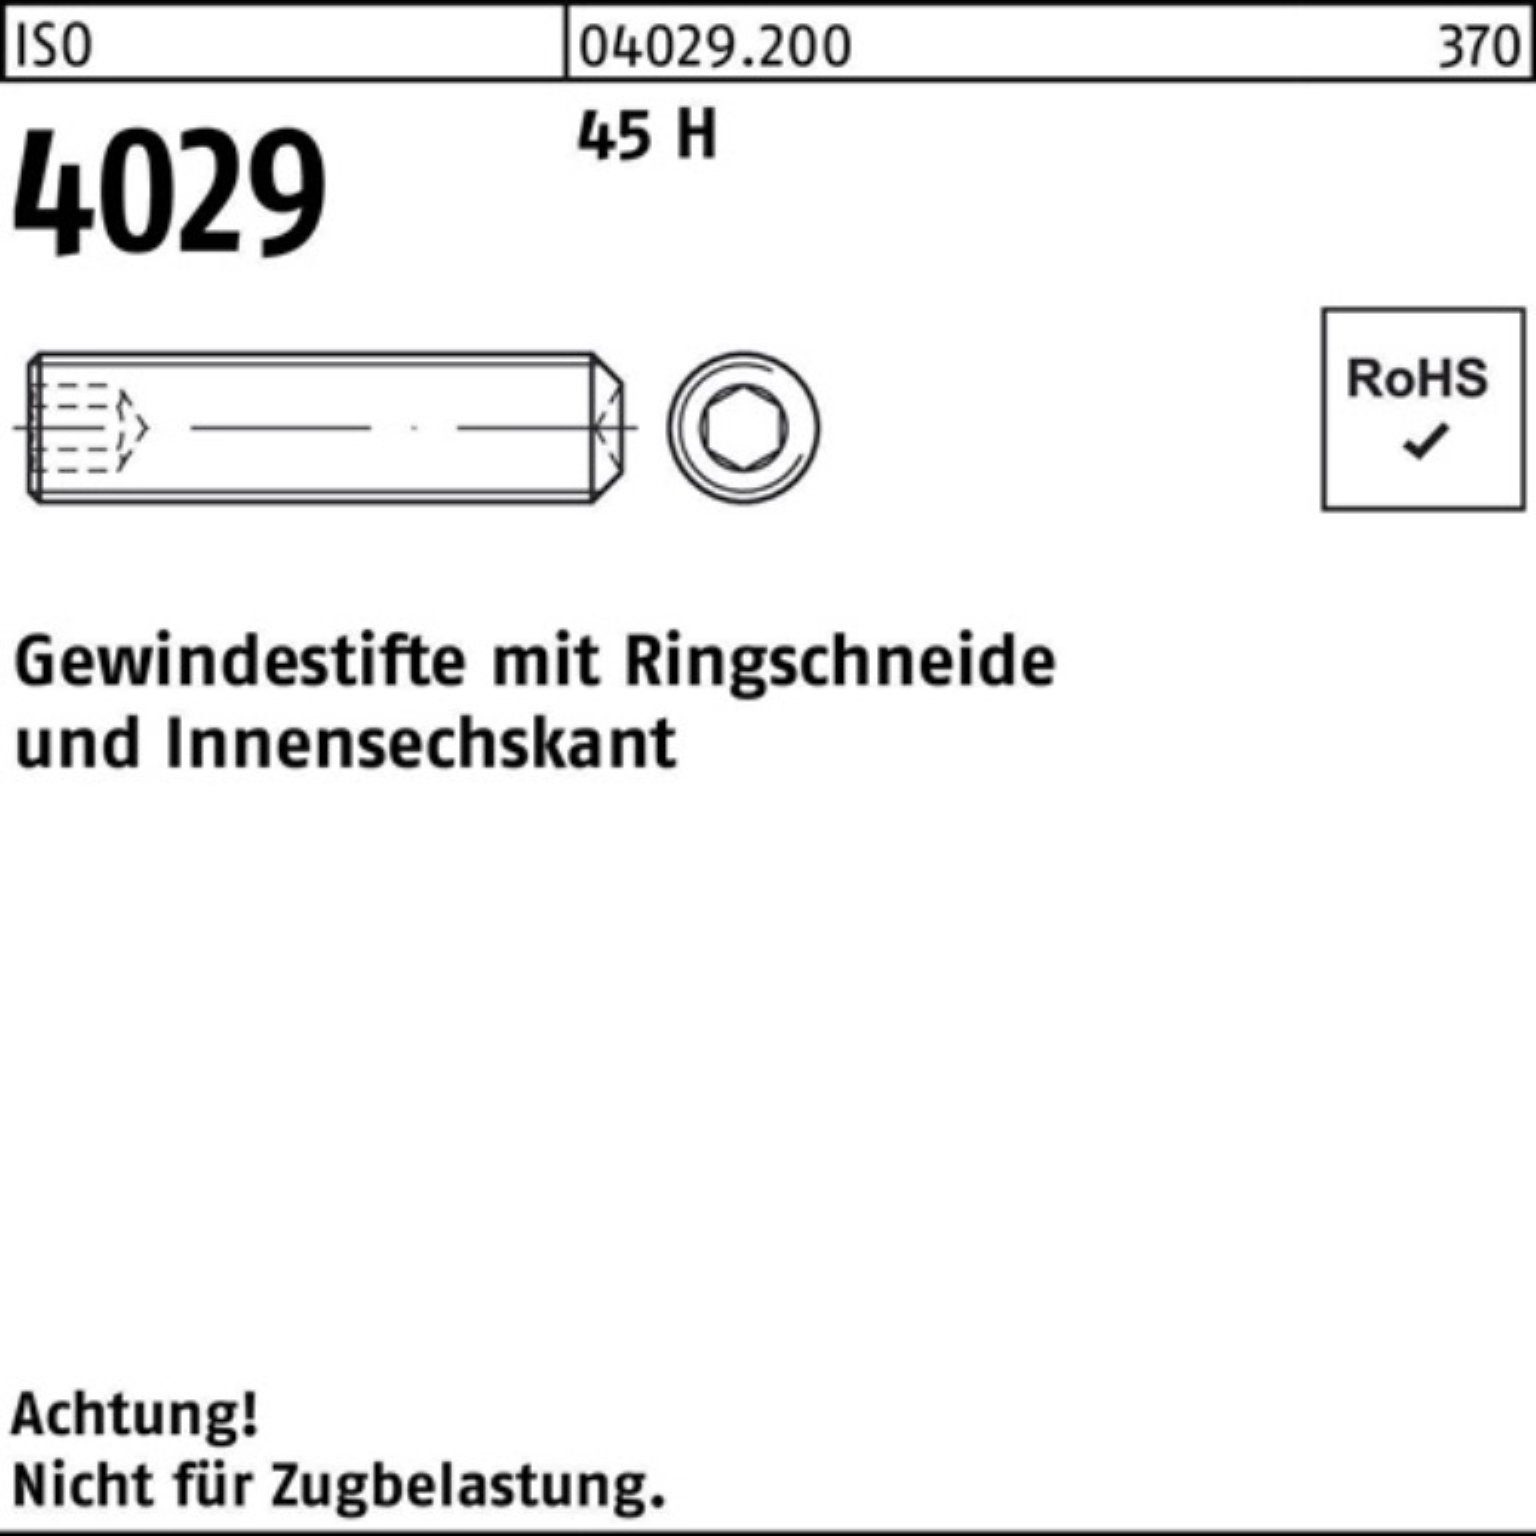 10 1000er H Ringschneide/Innen-6kt 45 M5x Pack Gewindestift Gewindebolzen 1 4029 ISO Reyher